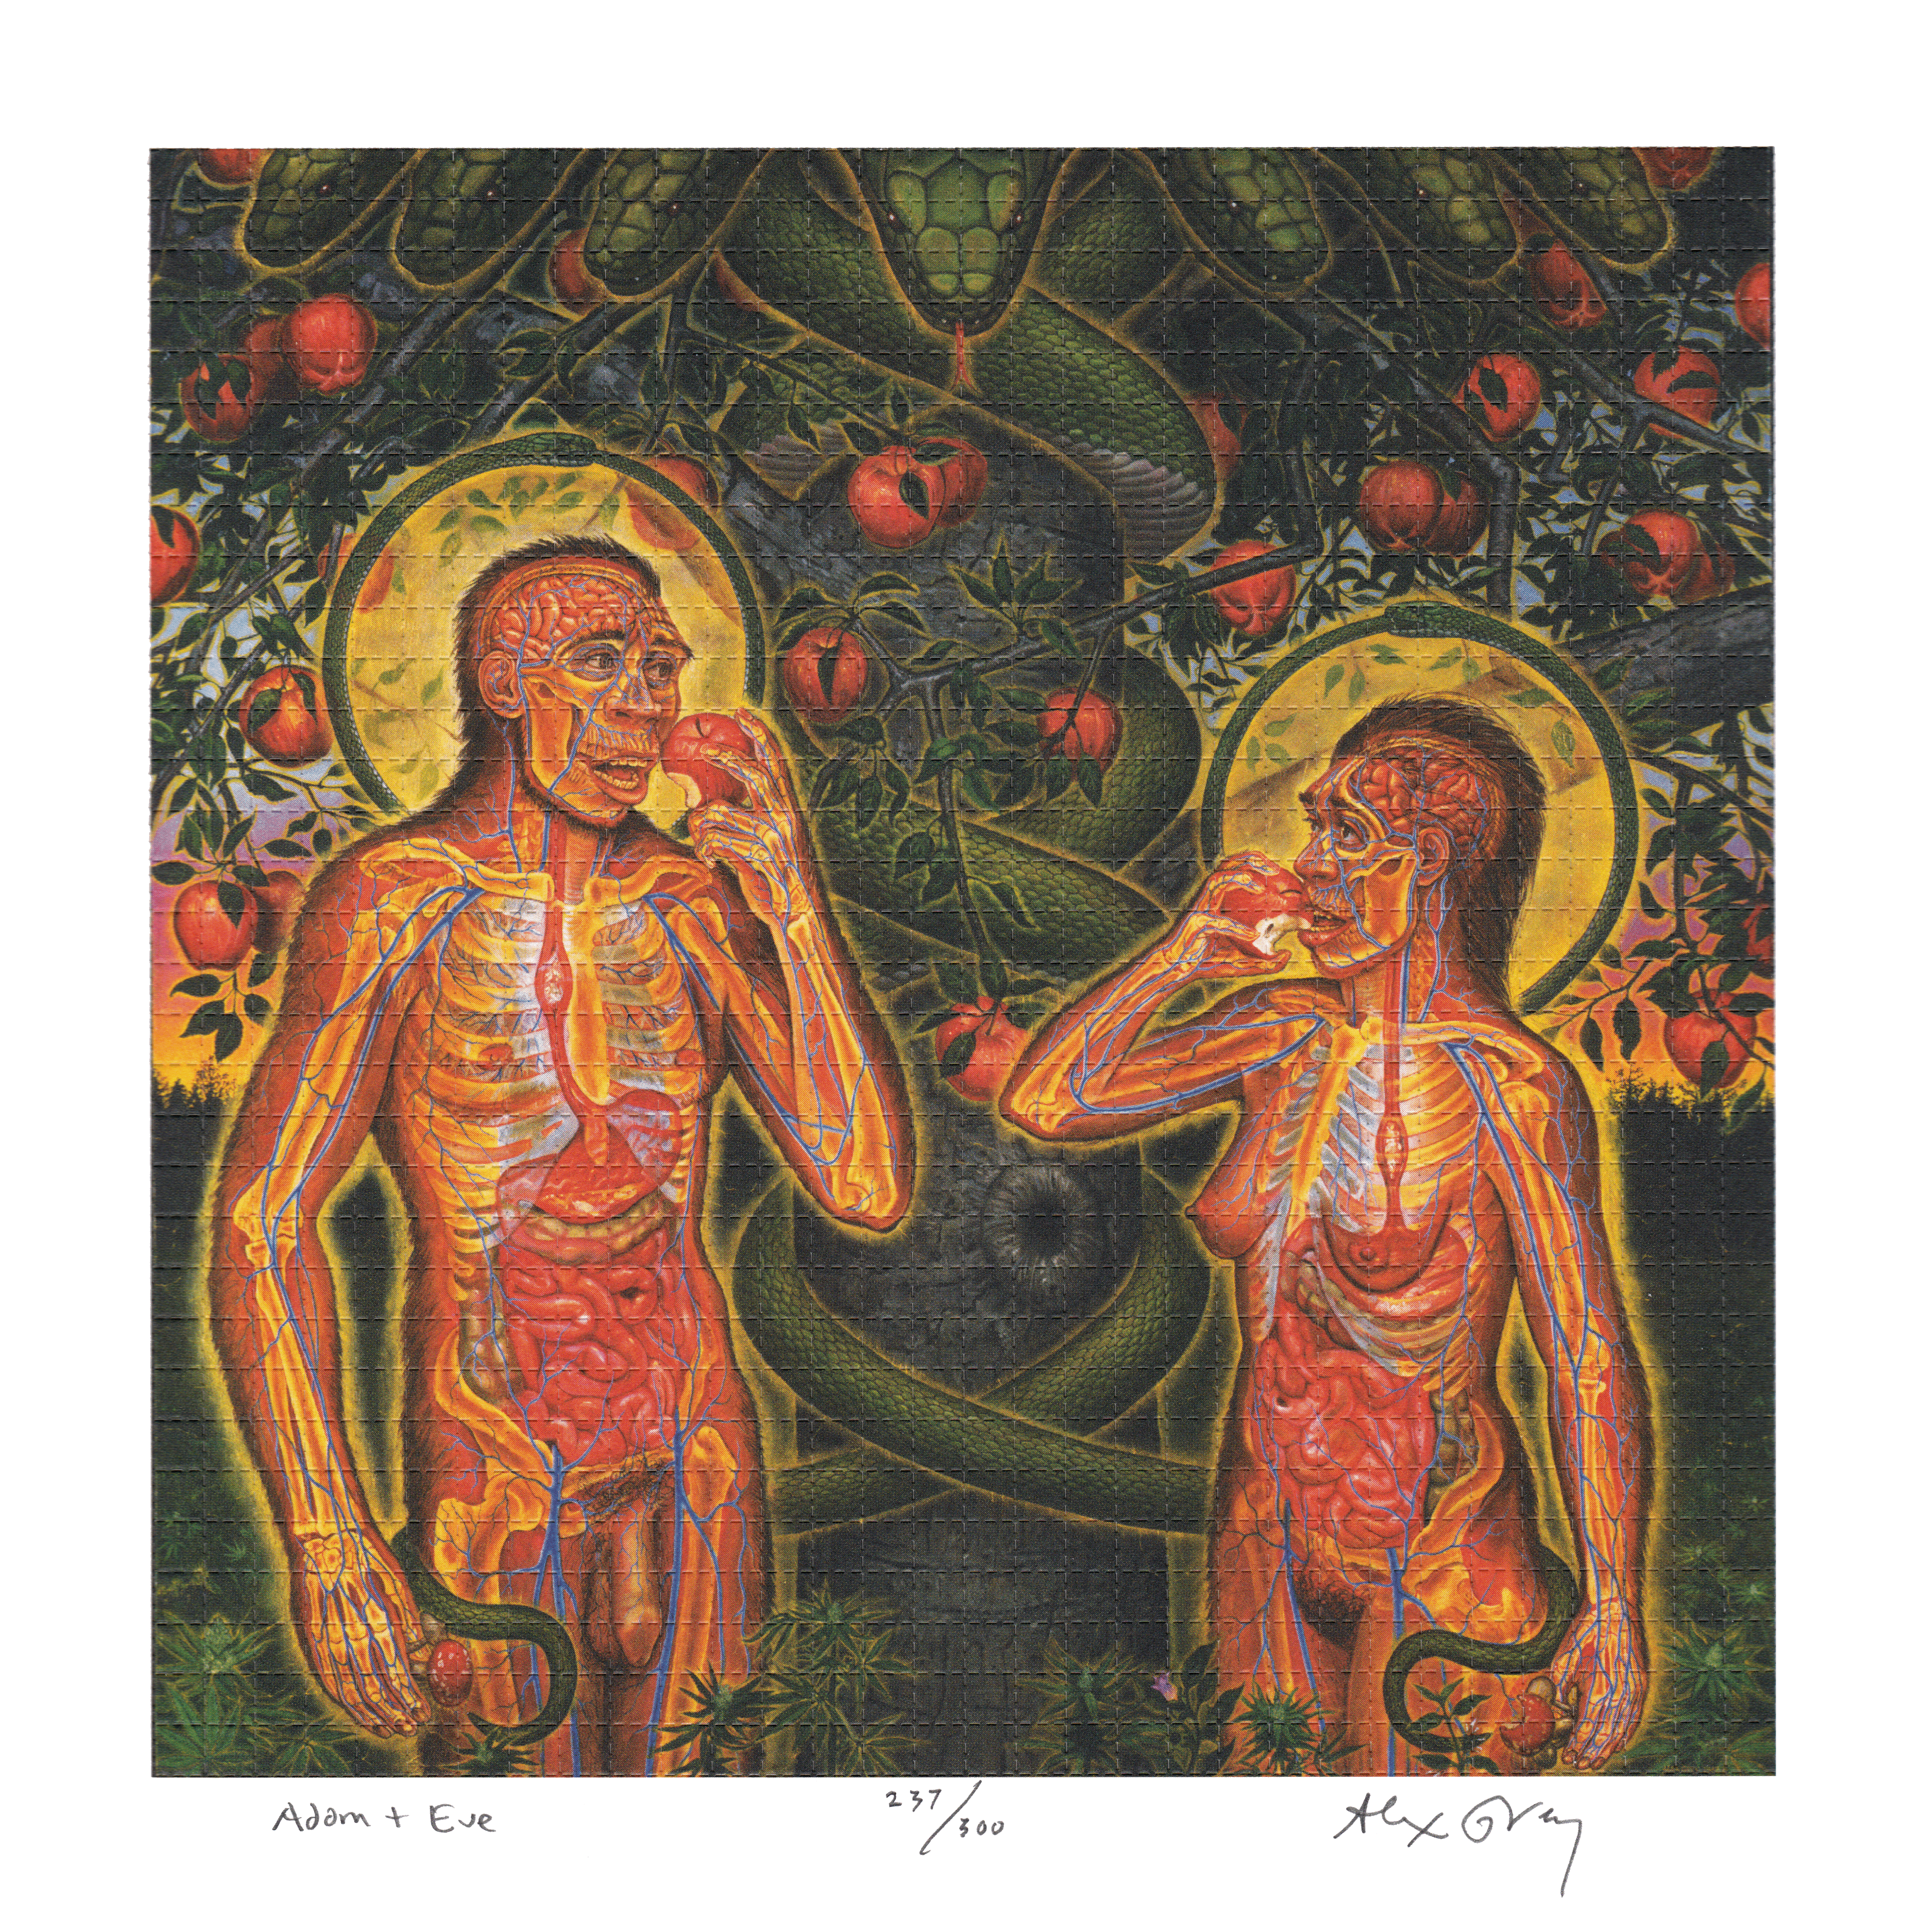 Adam & Eve by Alex Grey as LSD Blotter Art #237/300